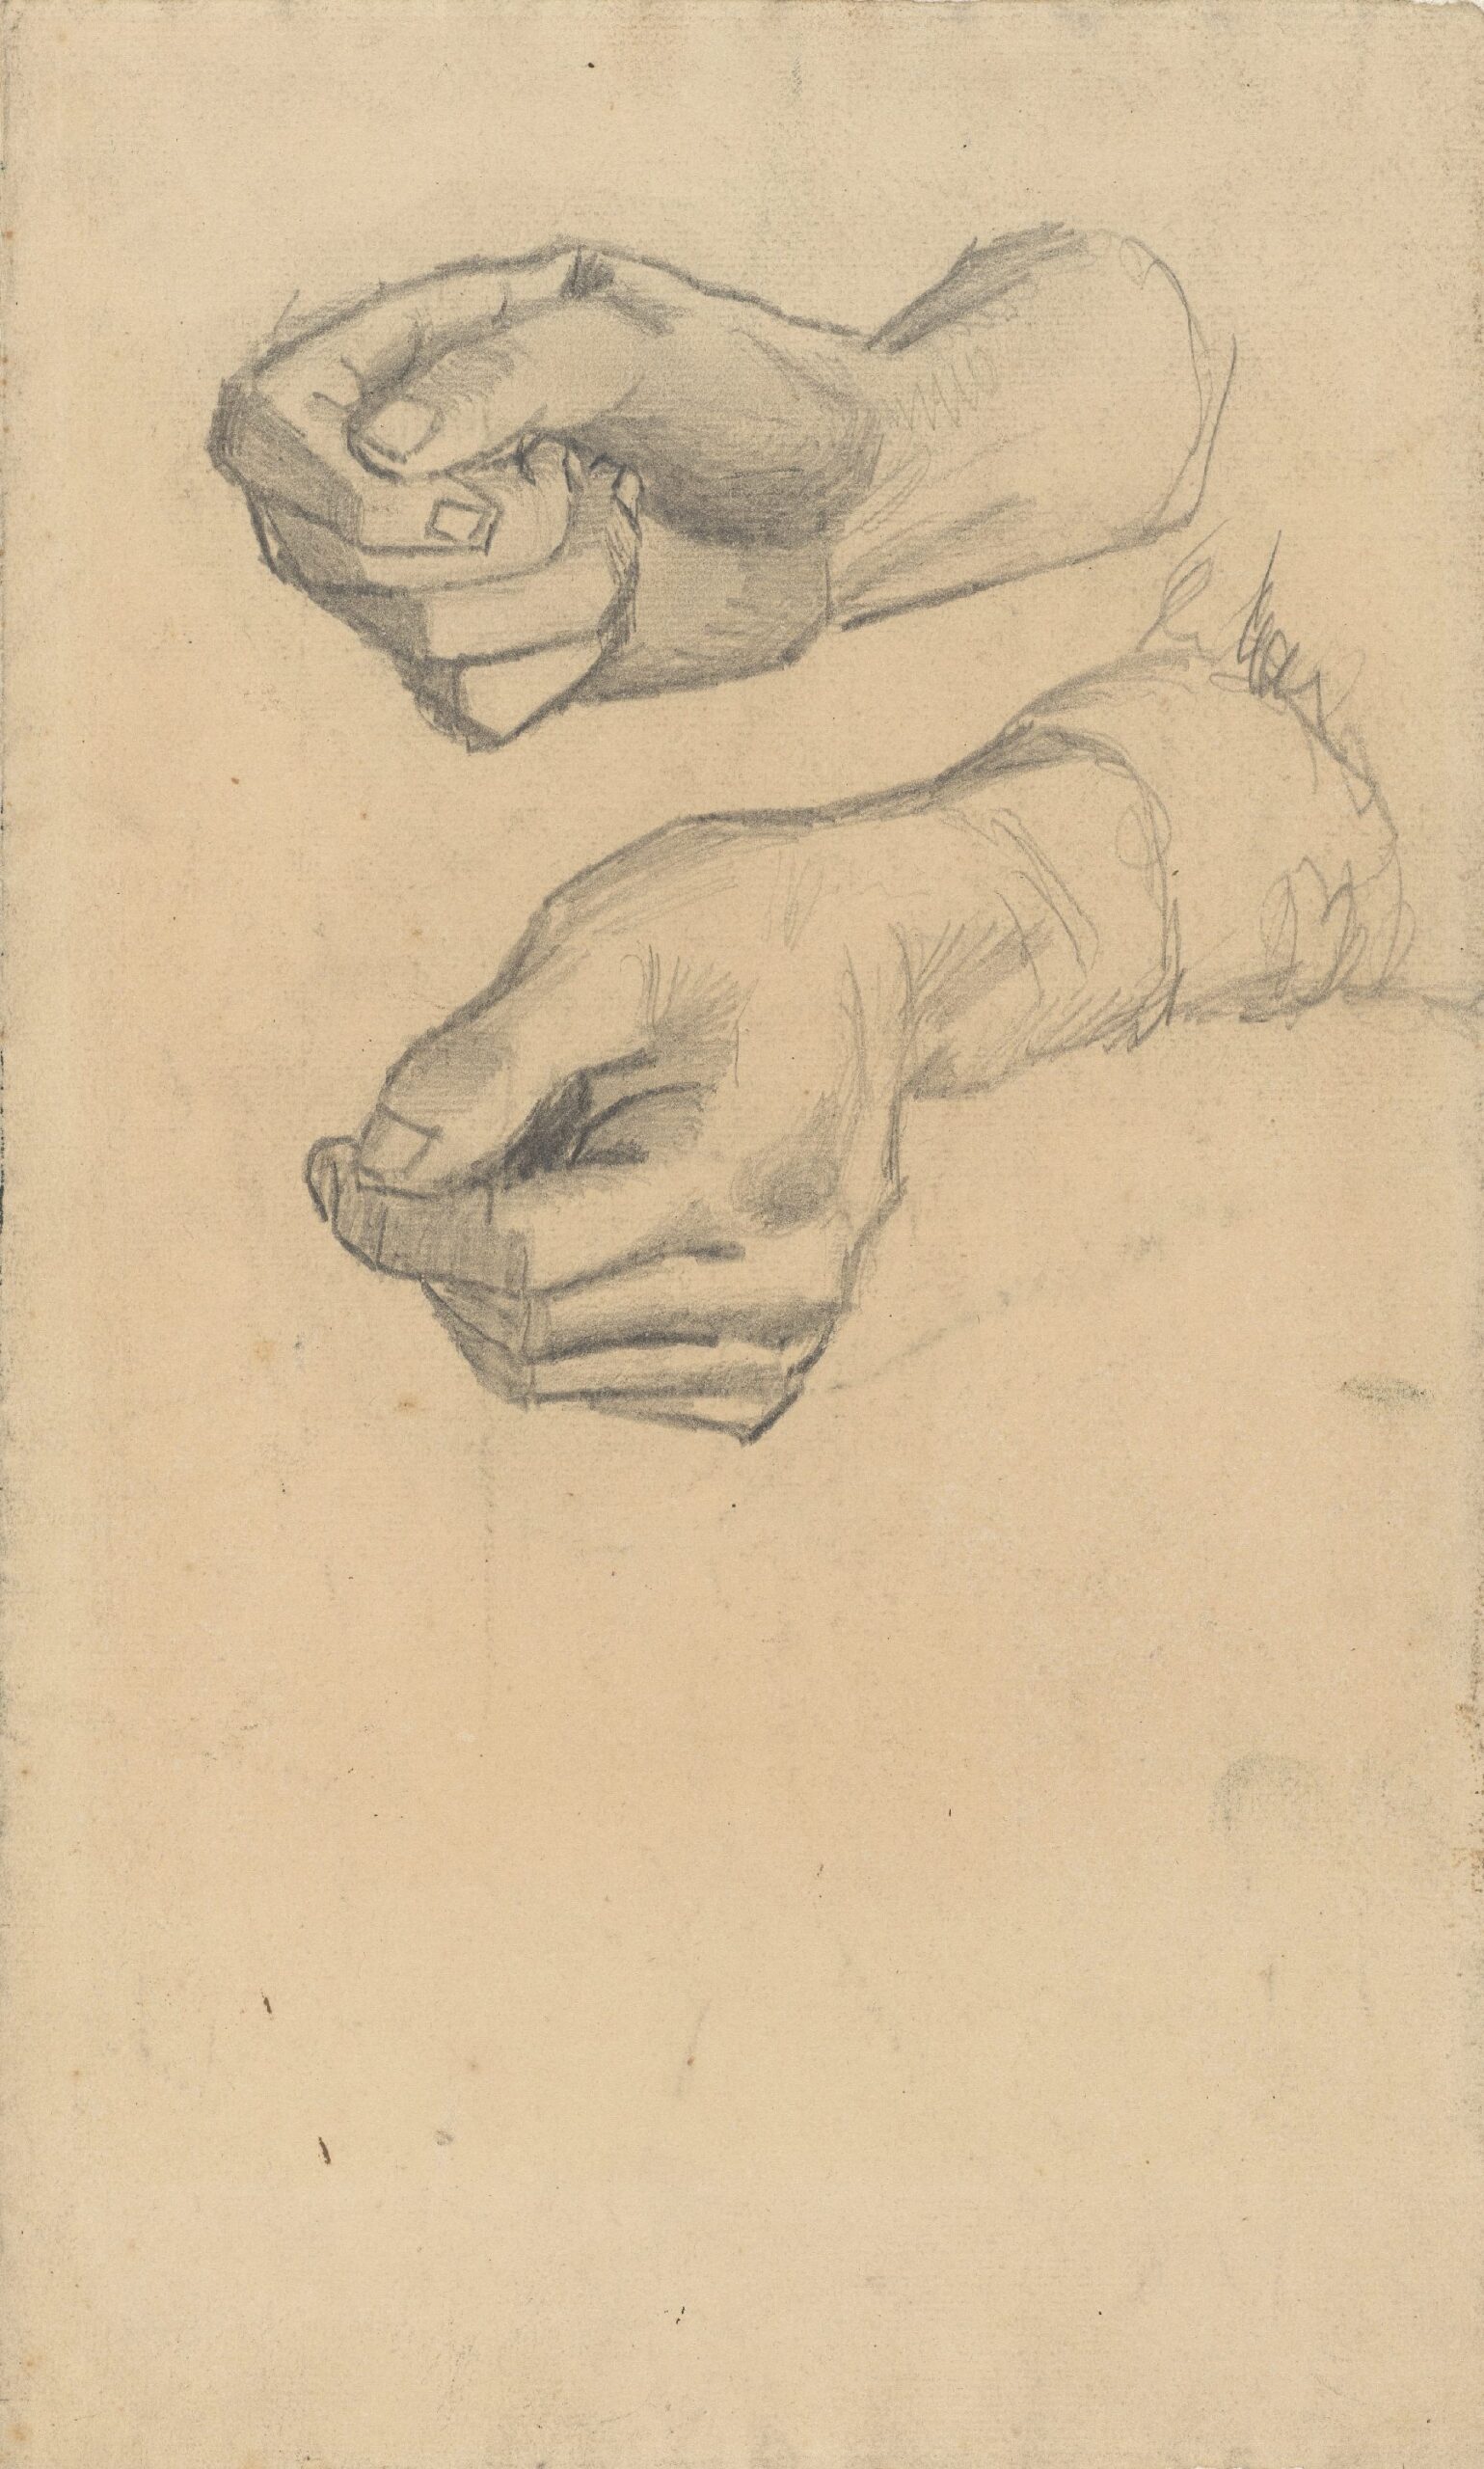 Twee handen Vincent van Gogh (1853 - 1890), Nuenen, december 1884-mei 1885